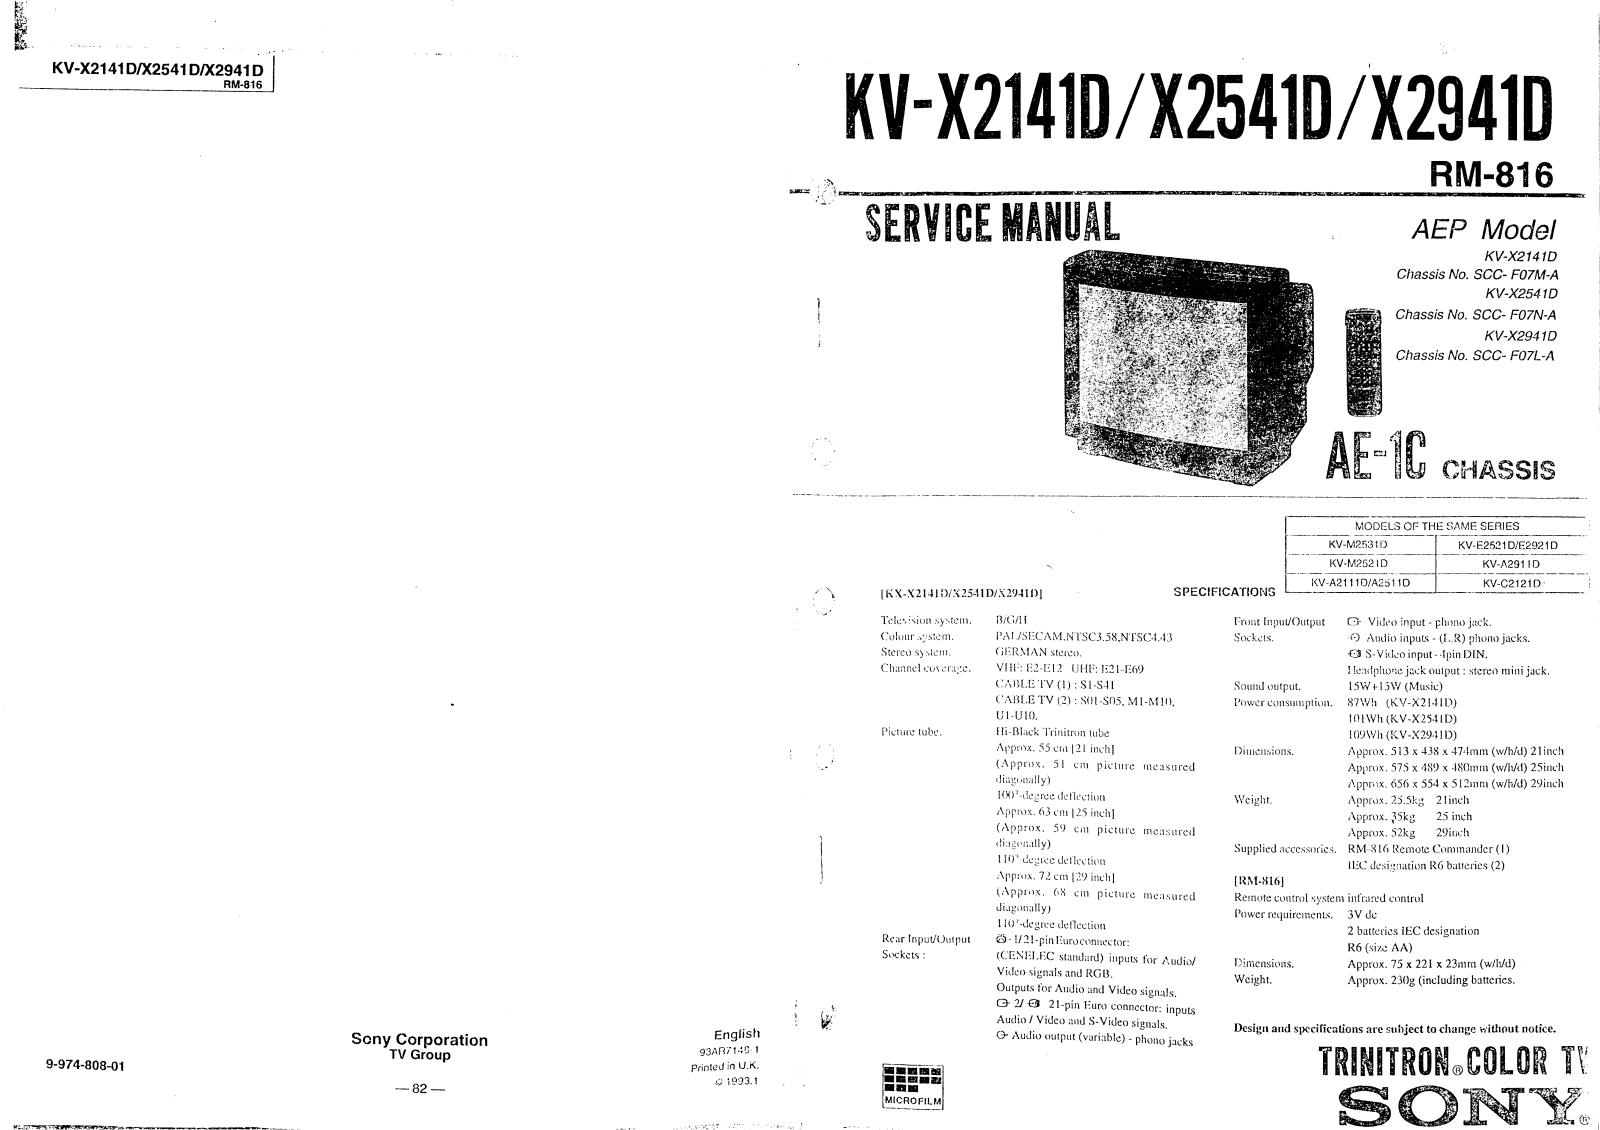 SONY KV-X2141D, KV-X2541D, KV-X2941D SERVICE MANUAL